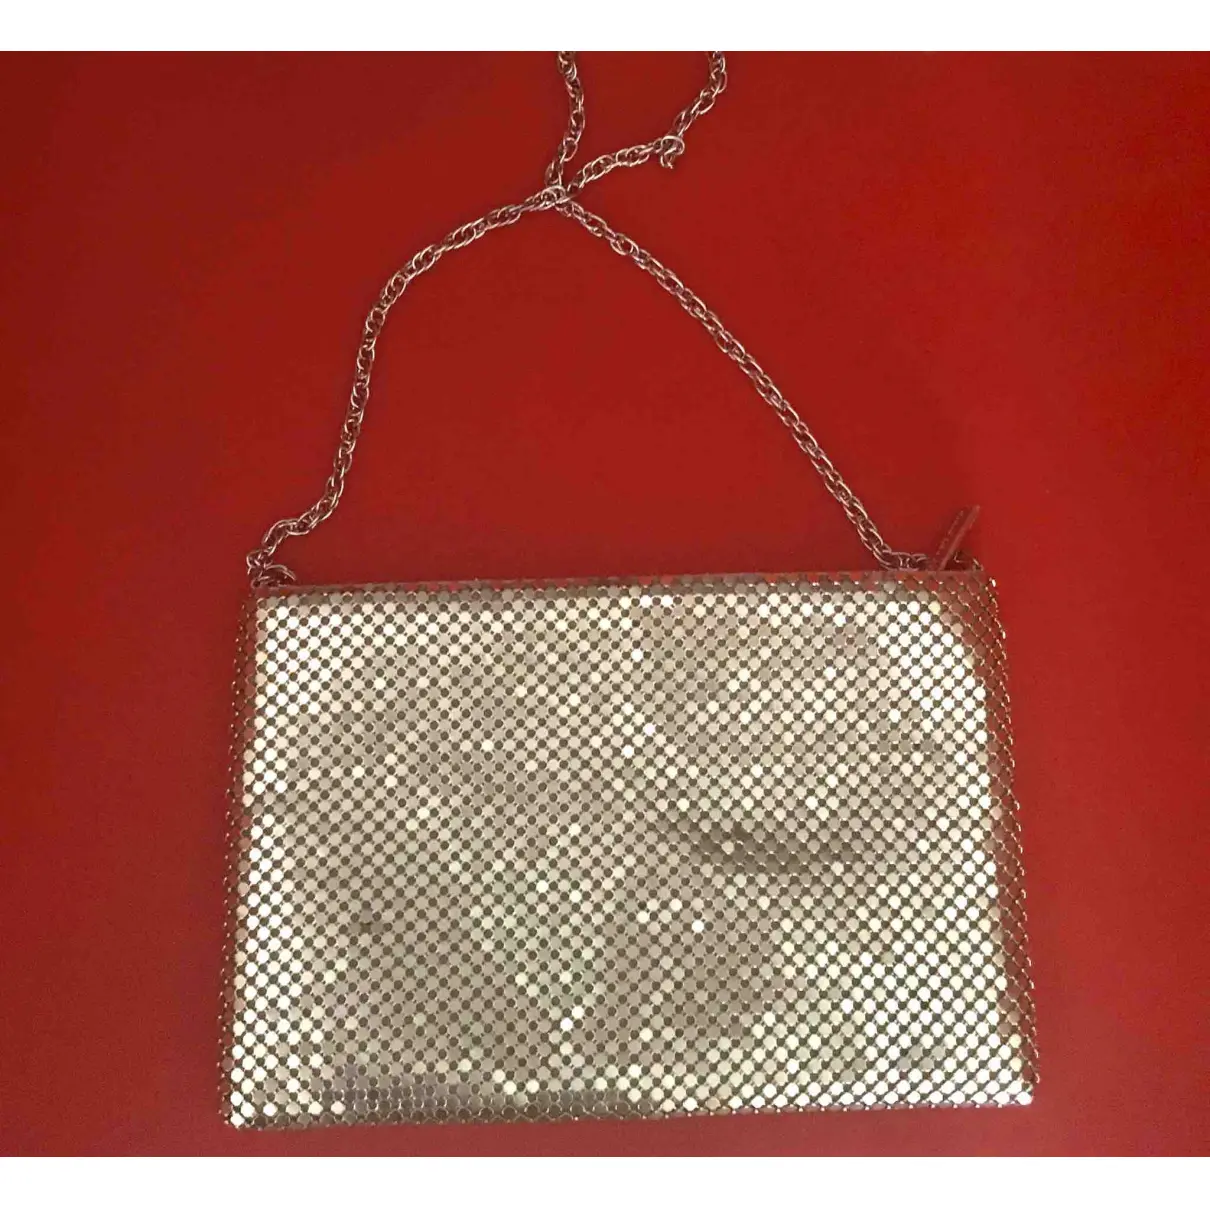 Buy Paco Rabanne Clutch bag online - Vintage